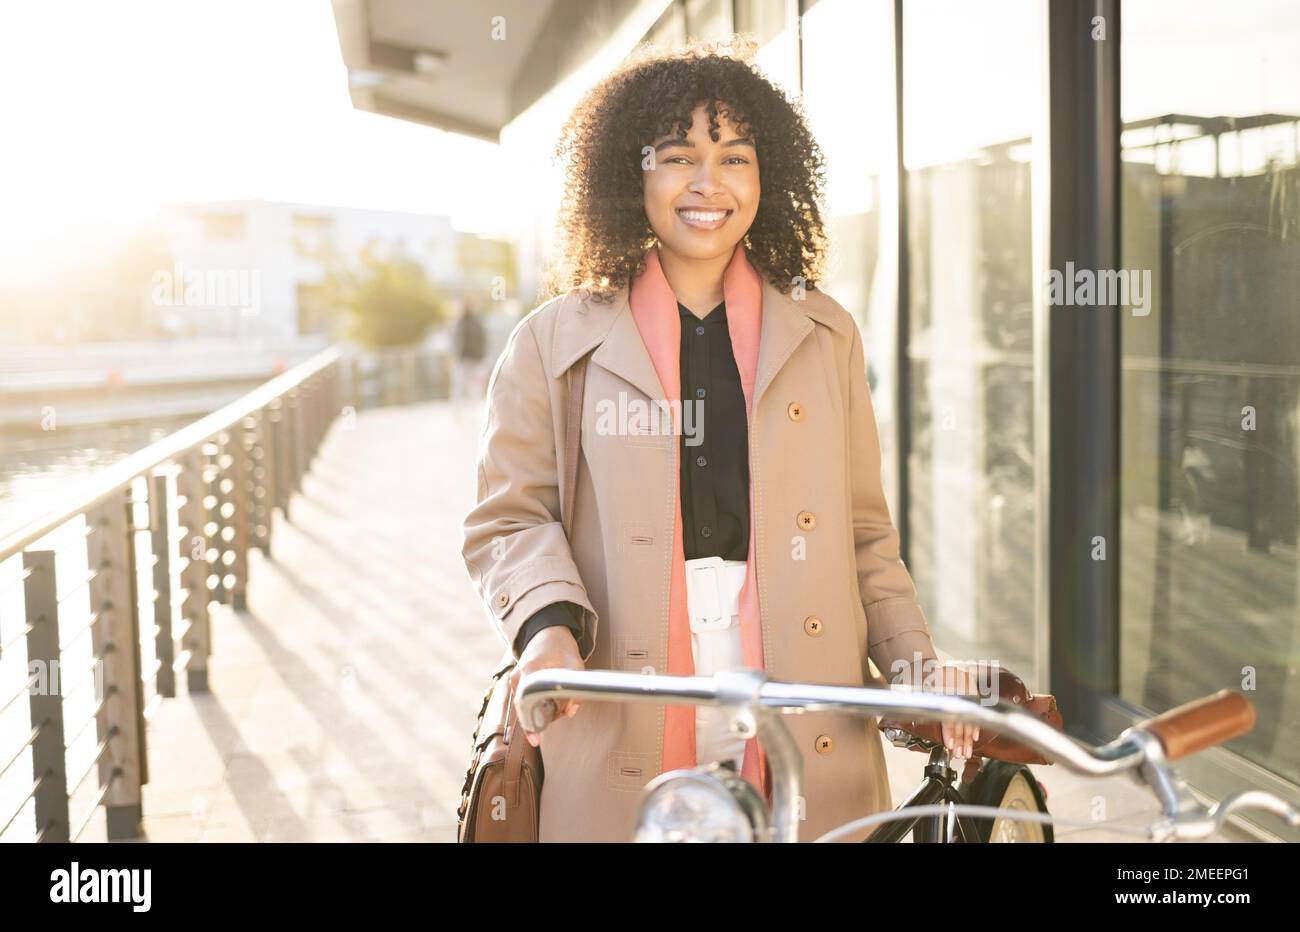 Viaggio in bicicletta, ritratto o donna nera in bicicletta al lavoro, lavoro professionale o relax viaggio mattutino nella città di San Francisco. Trasporto ecologico Foto Stock